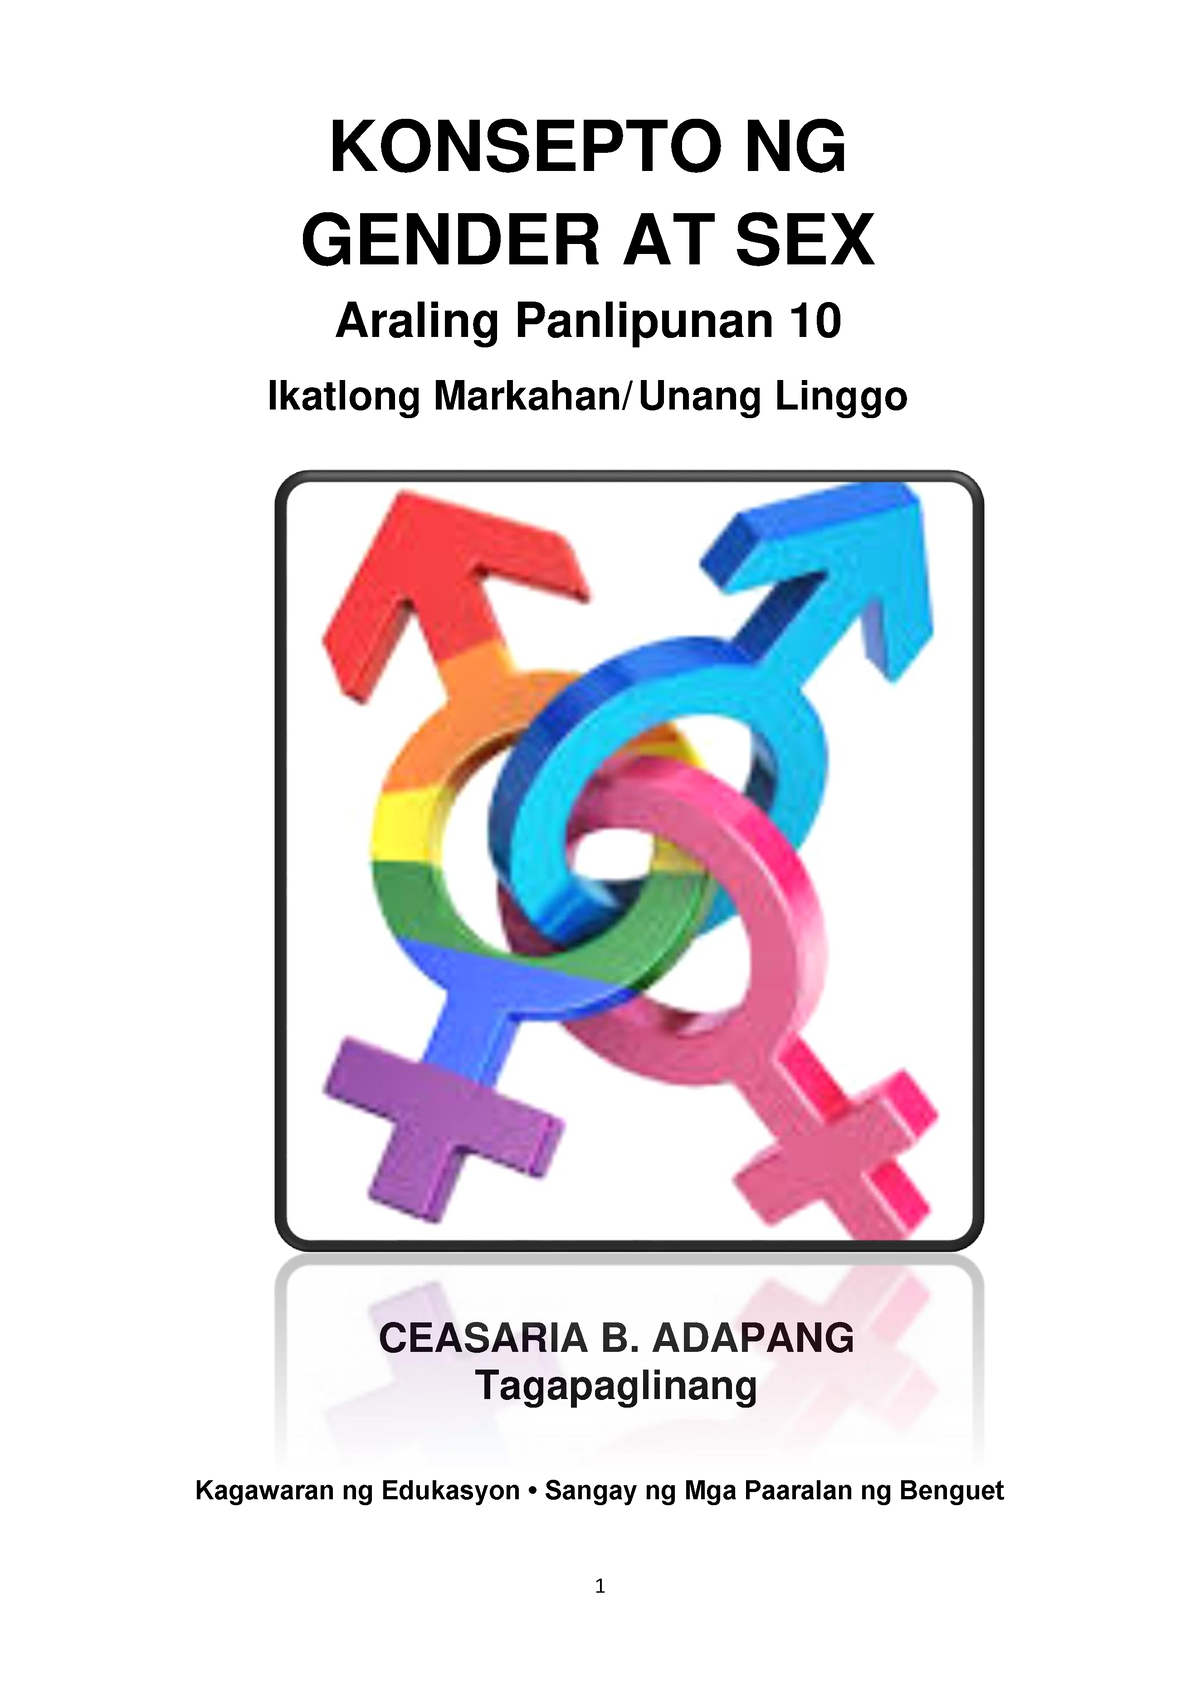 Ap10 Q3 W1 Konsepto Ng Gender At Sex Adapang Benguet V3 Konsepto Ng Gender At Sex Araling 4076